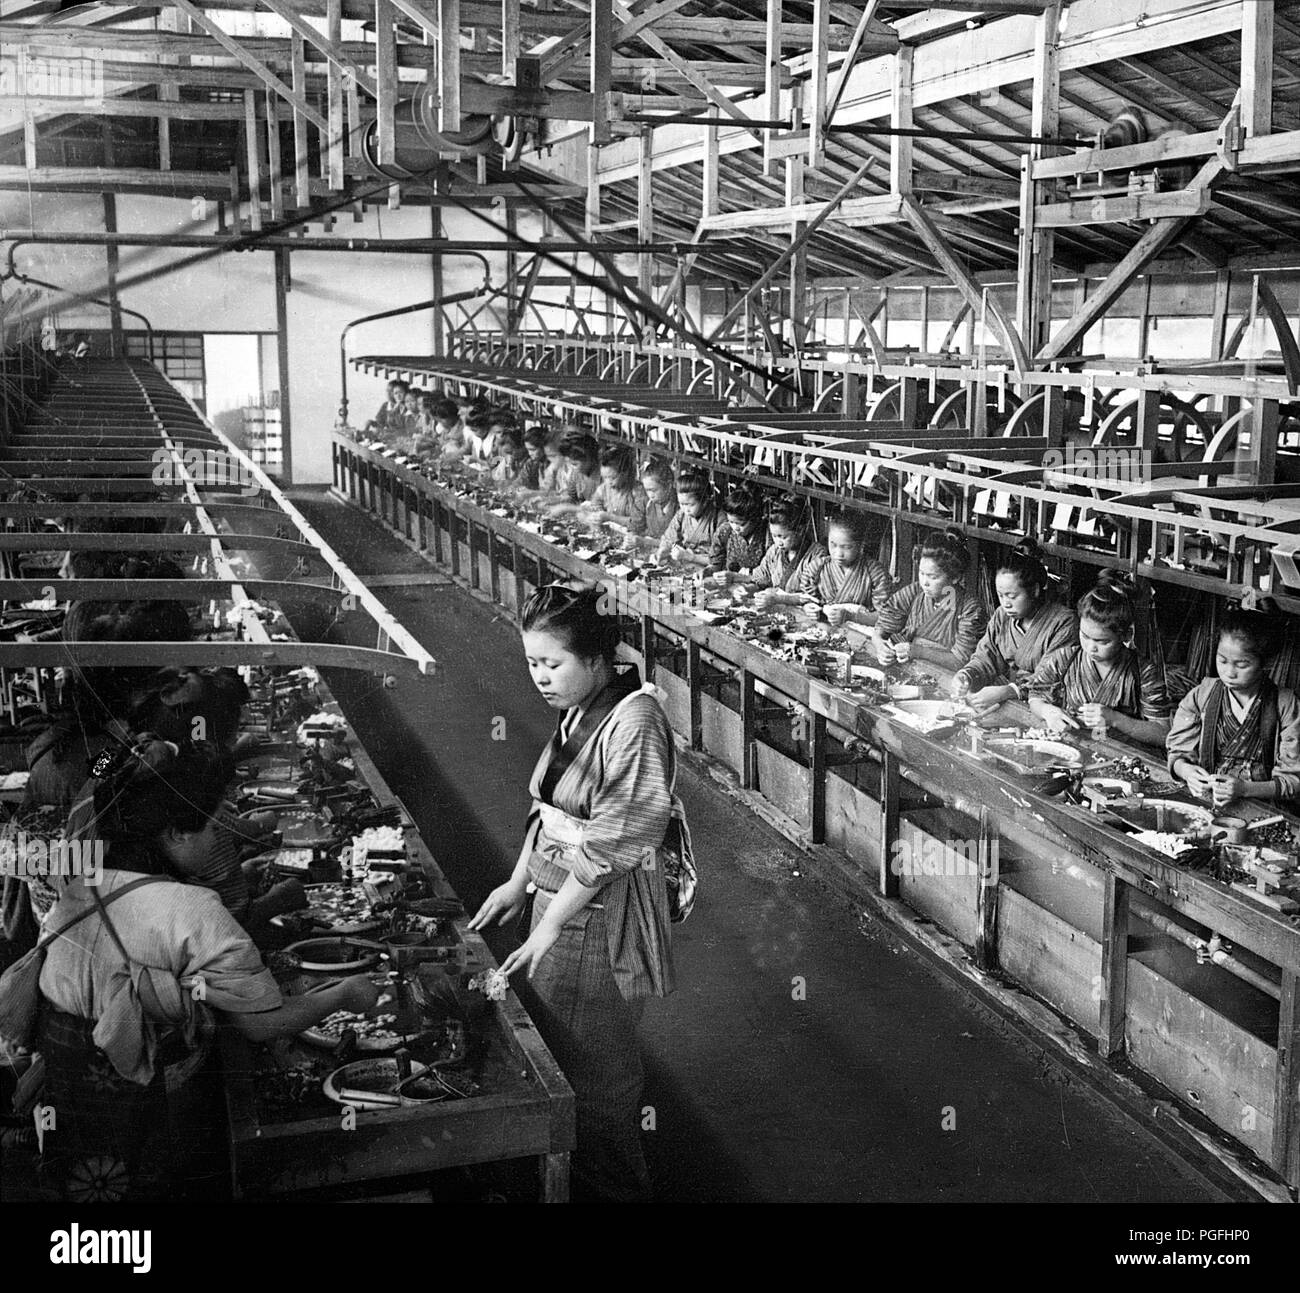 C. 1900s Giappone - Fabbrica di Seta ] - bozzoli di ebollizione e trattura  Seta da una fabbrica di